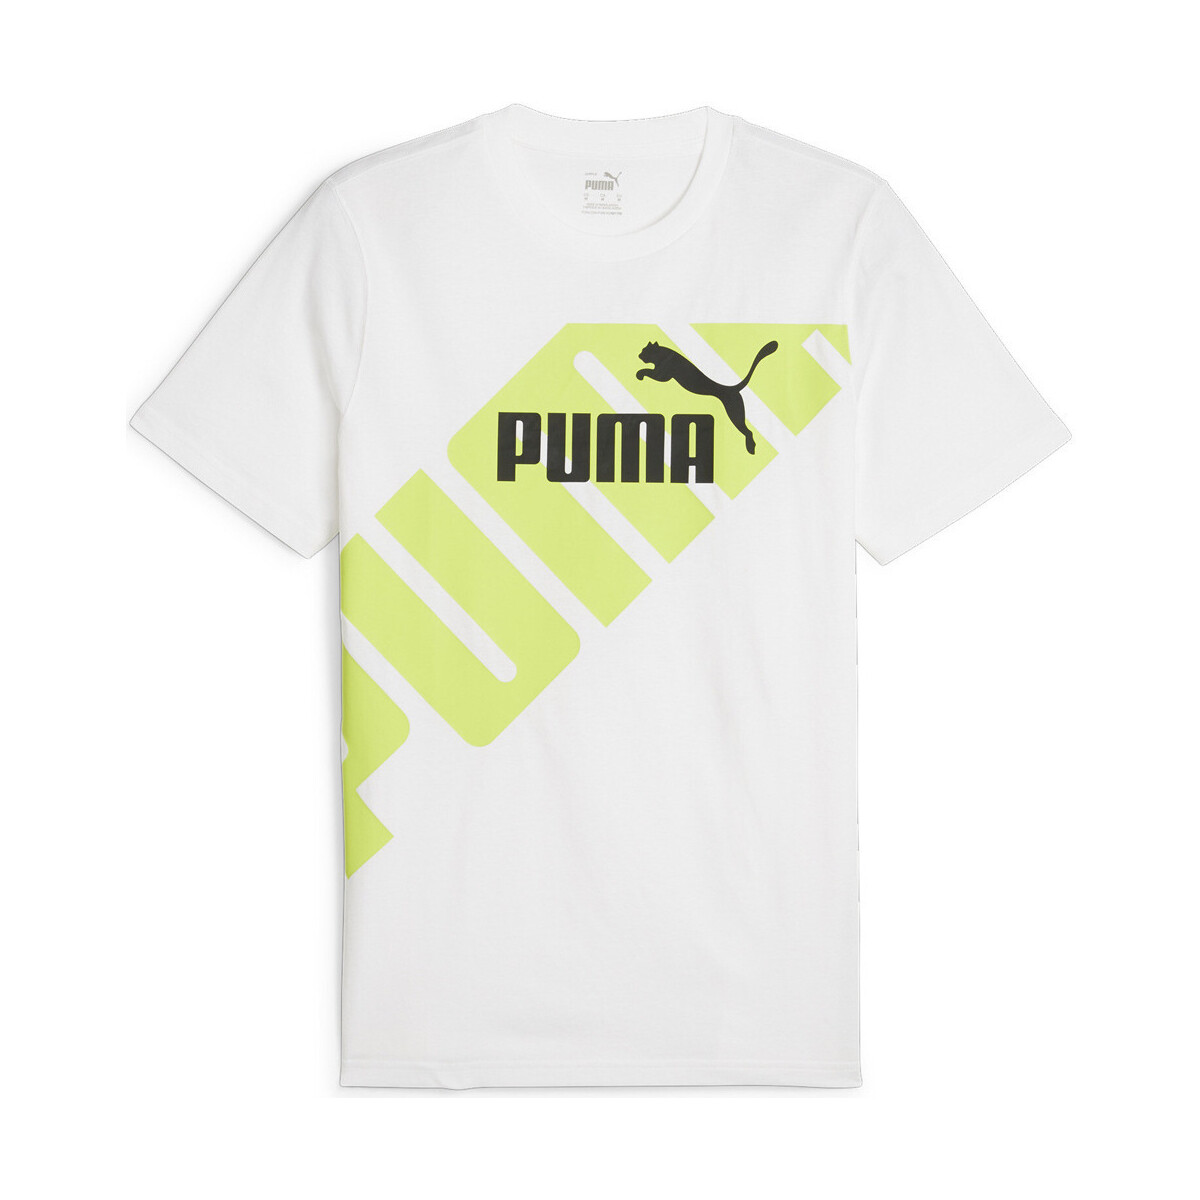 Vêtements Homme Polos manches courtes Puma POWER Graphic T Blanc